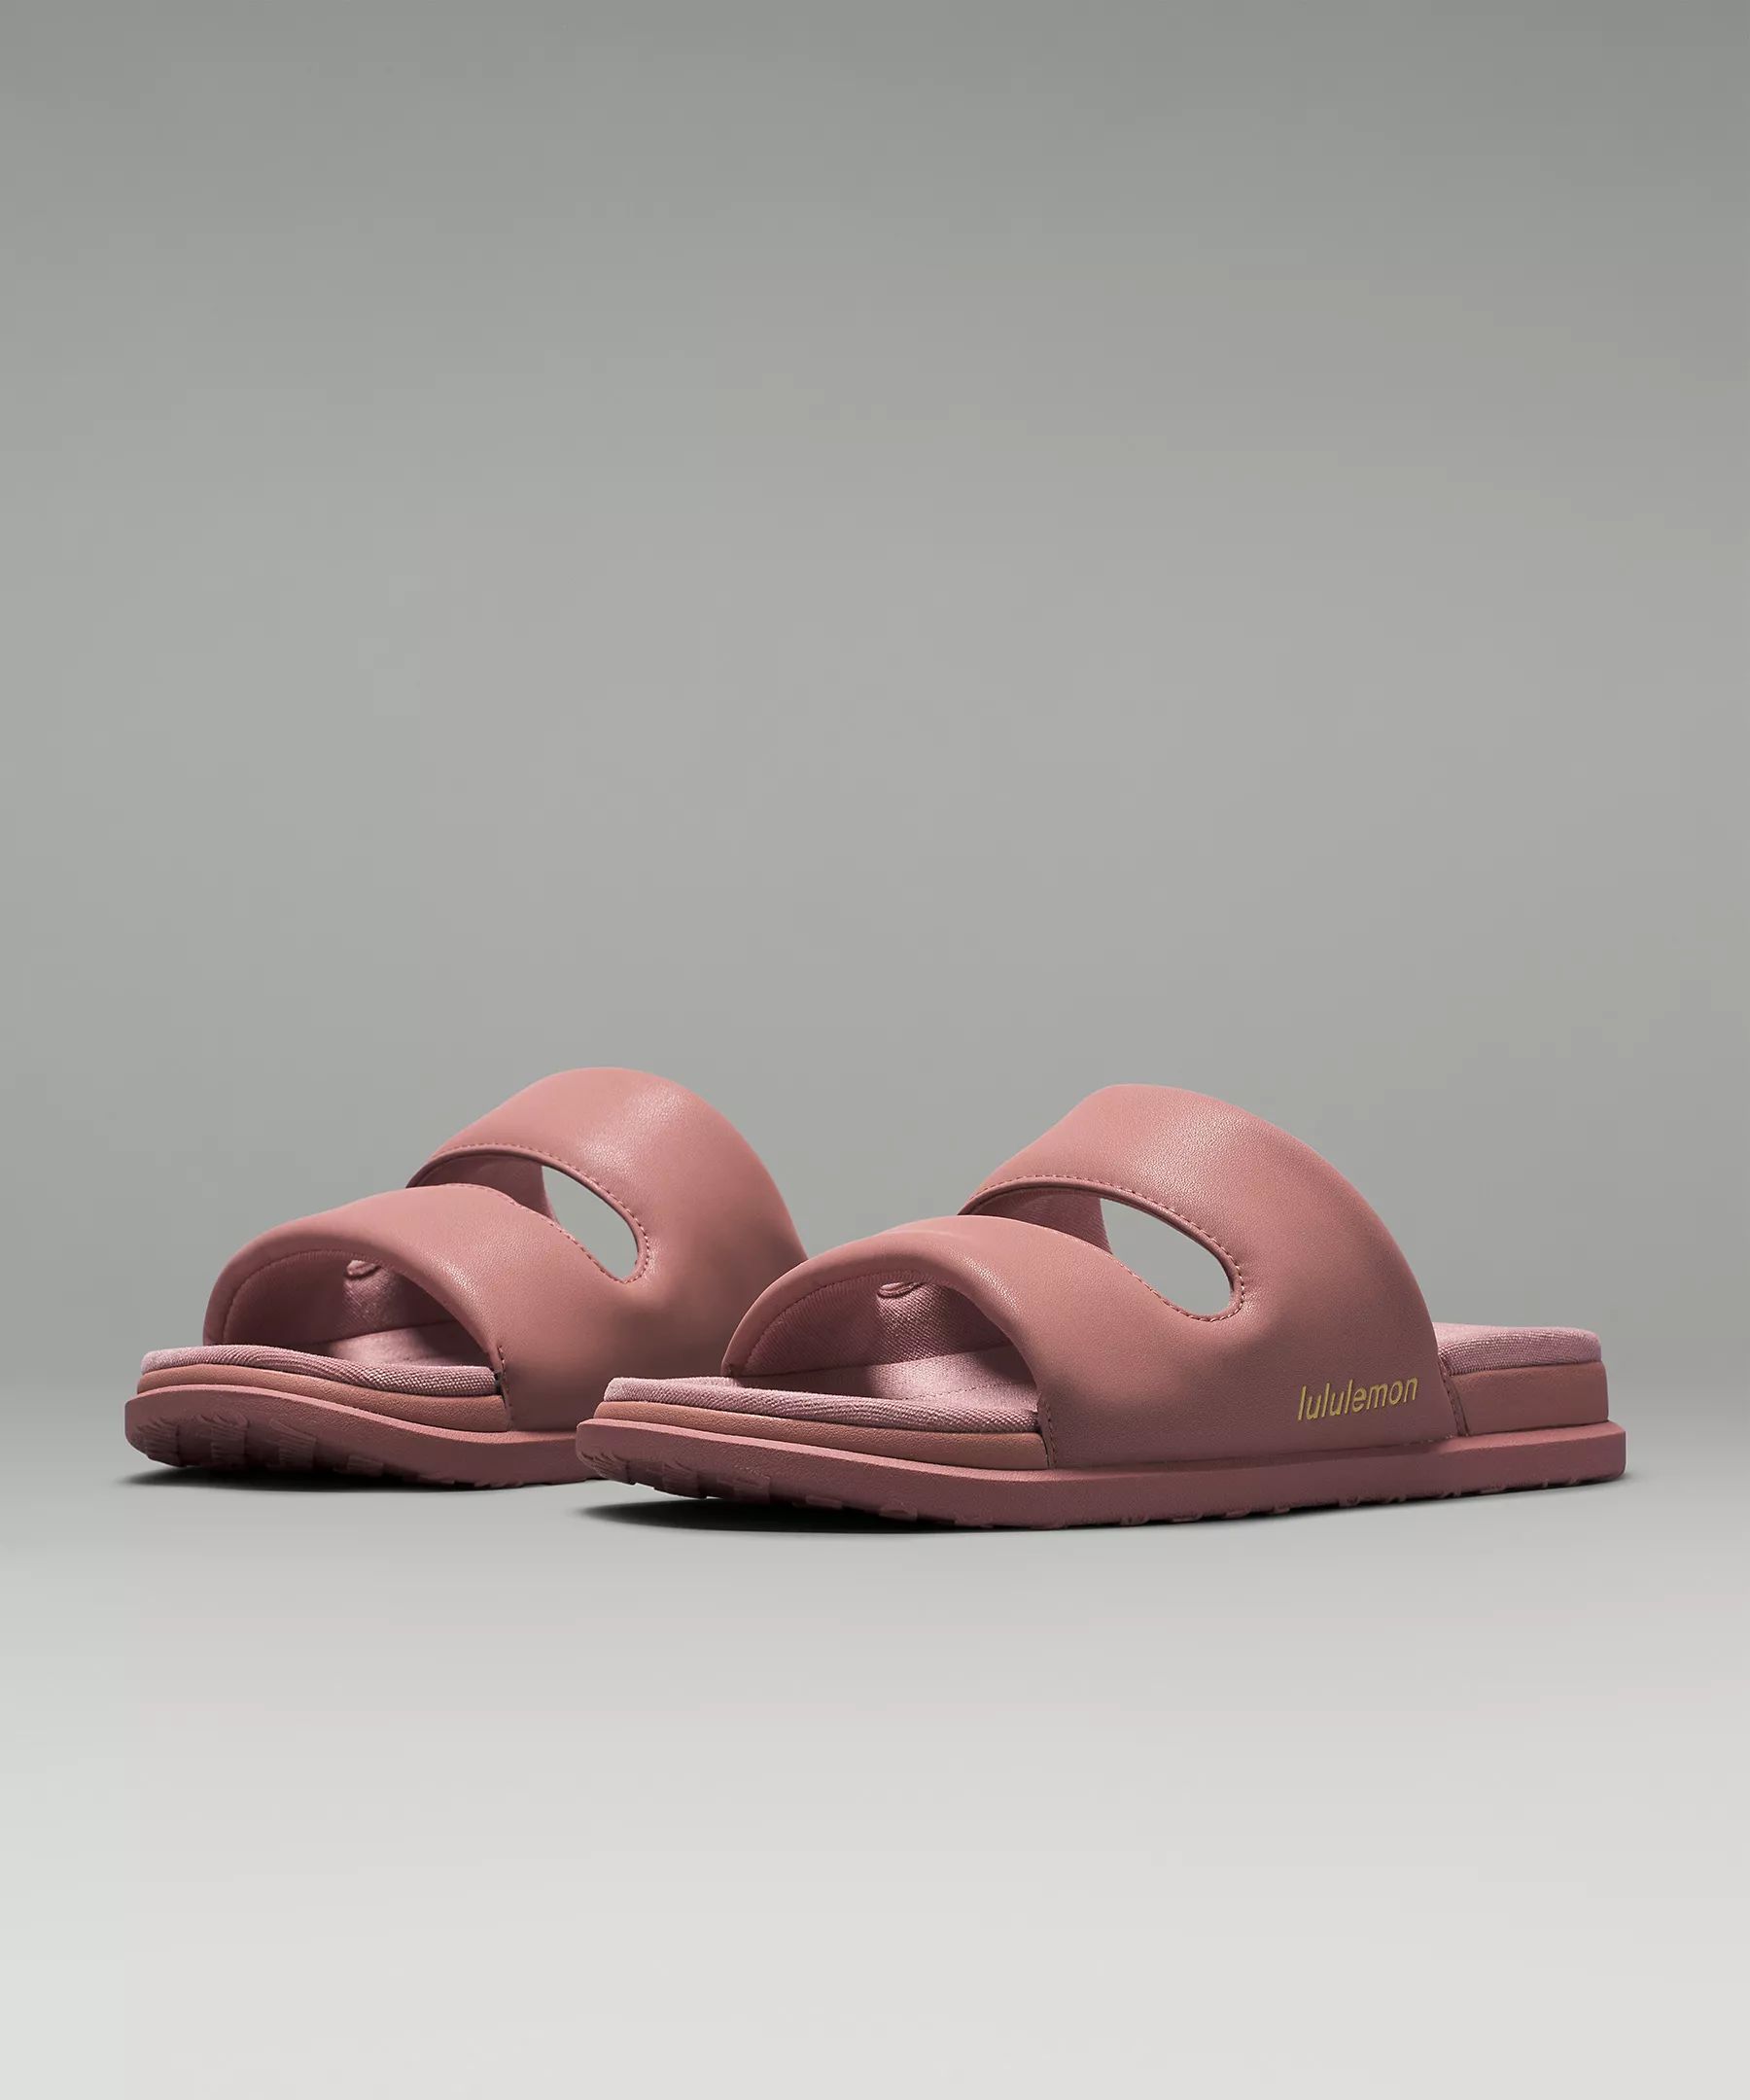 Restfeel Women's Sandal | Lululemon (US)